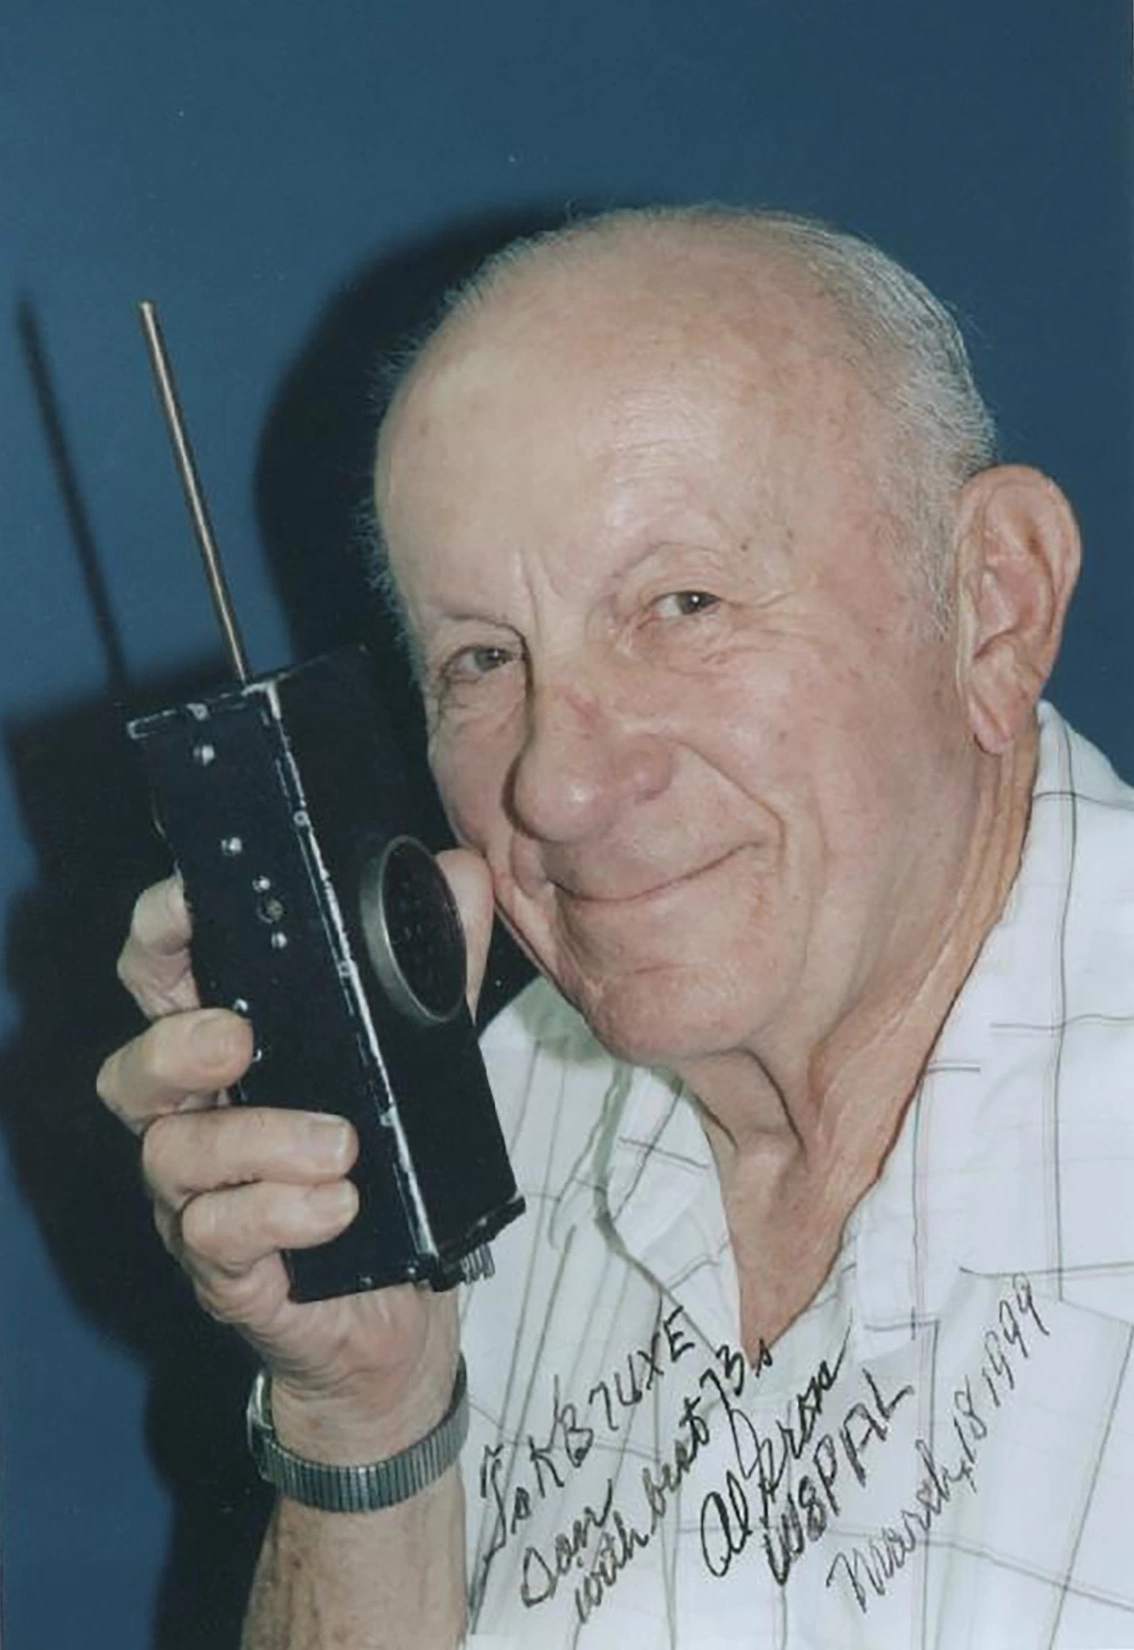 На фото: инженер Эл Гросс, который запатентовал множество устройств связи, в том числе раннюю версию рации, телефонный пейджер и беспроводной телефон